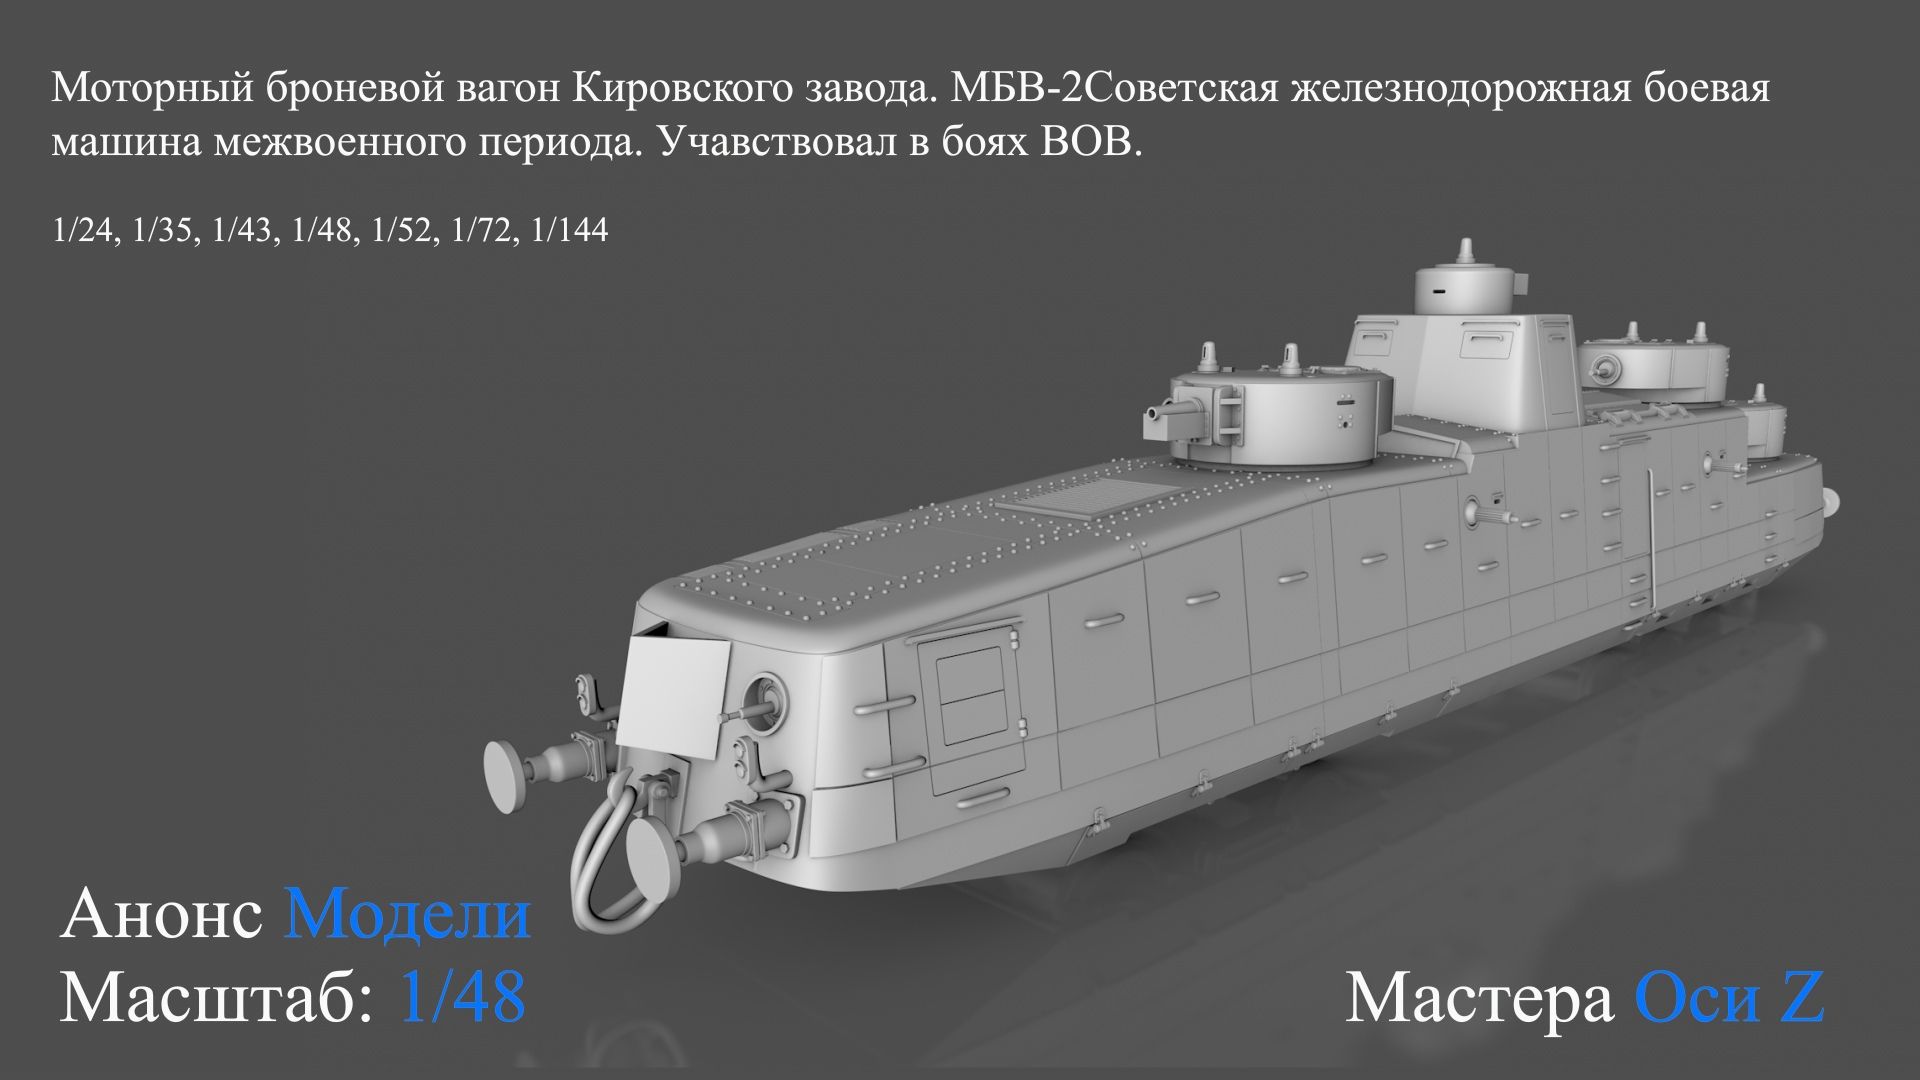 Мотоброневагон МБВ-2, Мастера Оси Z, 1/48, масштаб, модель